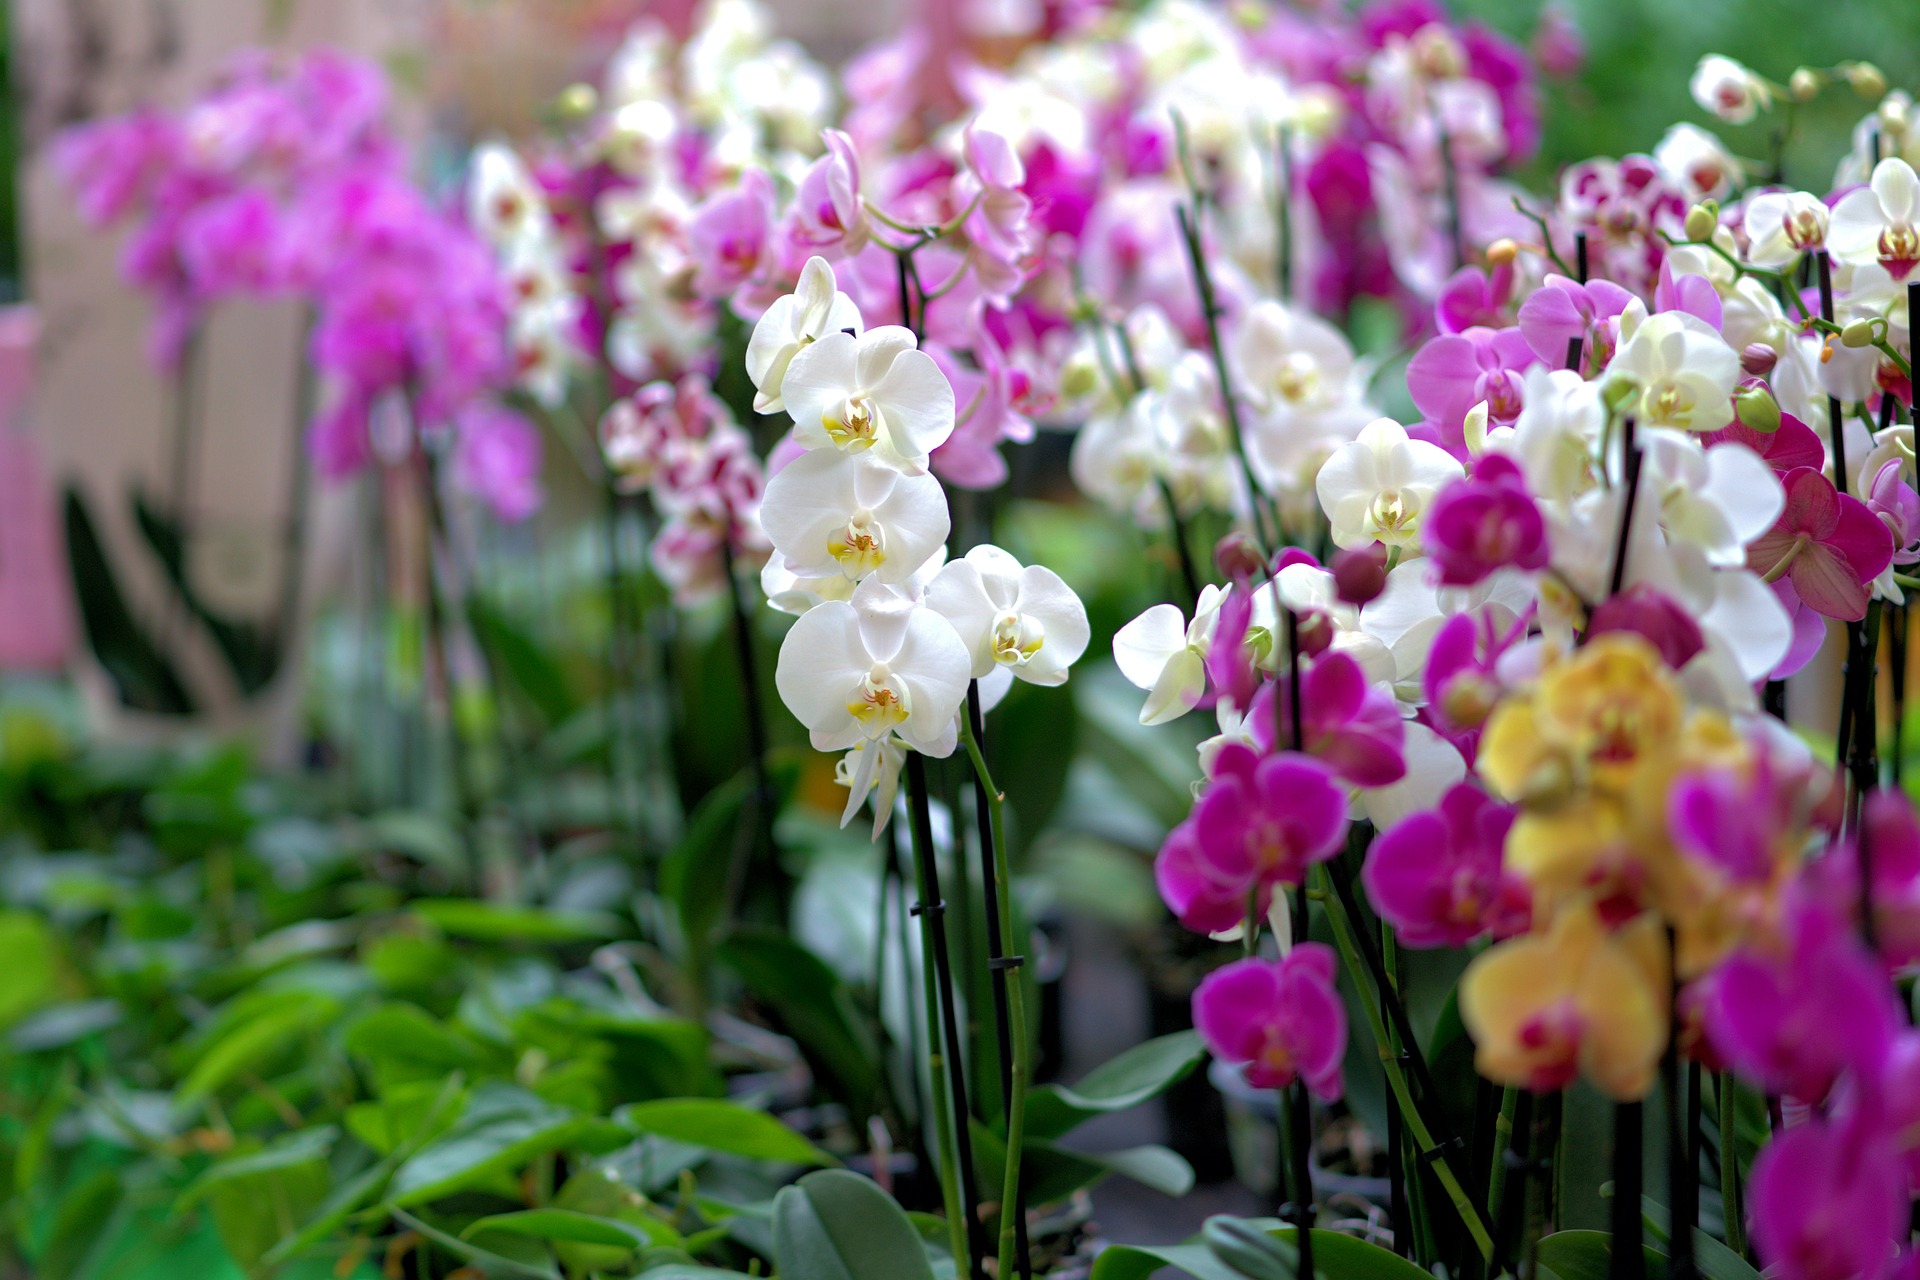 informatii despre ingrijirea si cultivarea orhideelor, sfaturi utile pentru incepatori